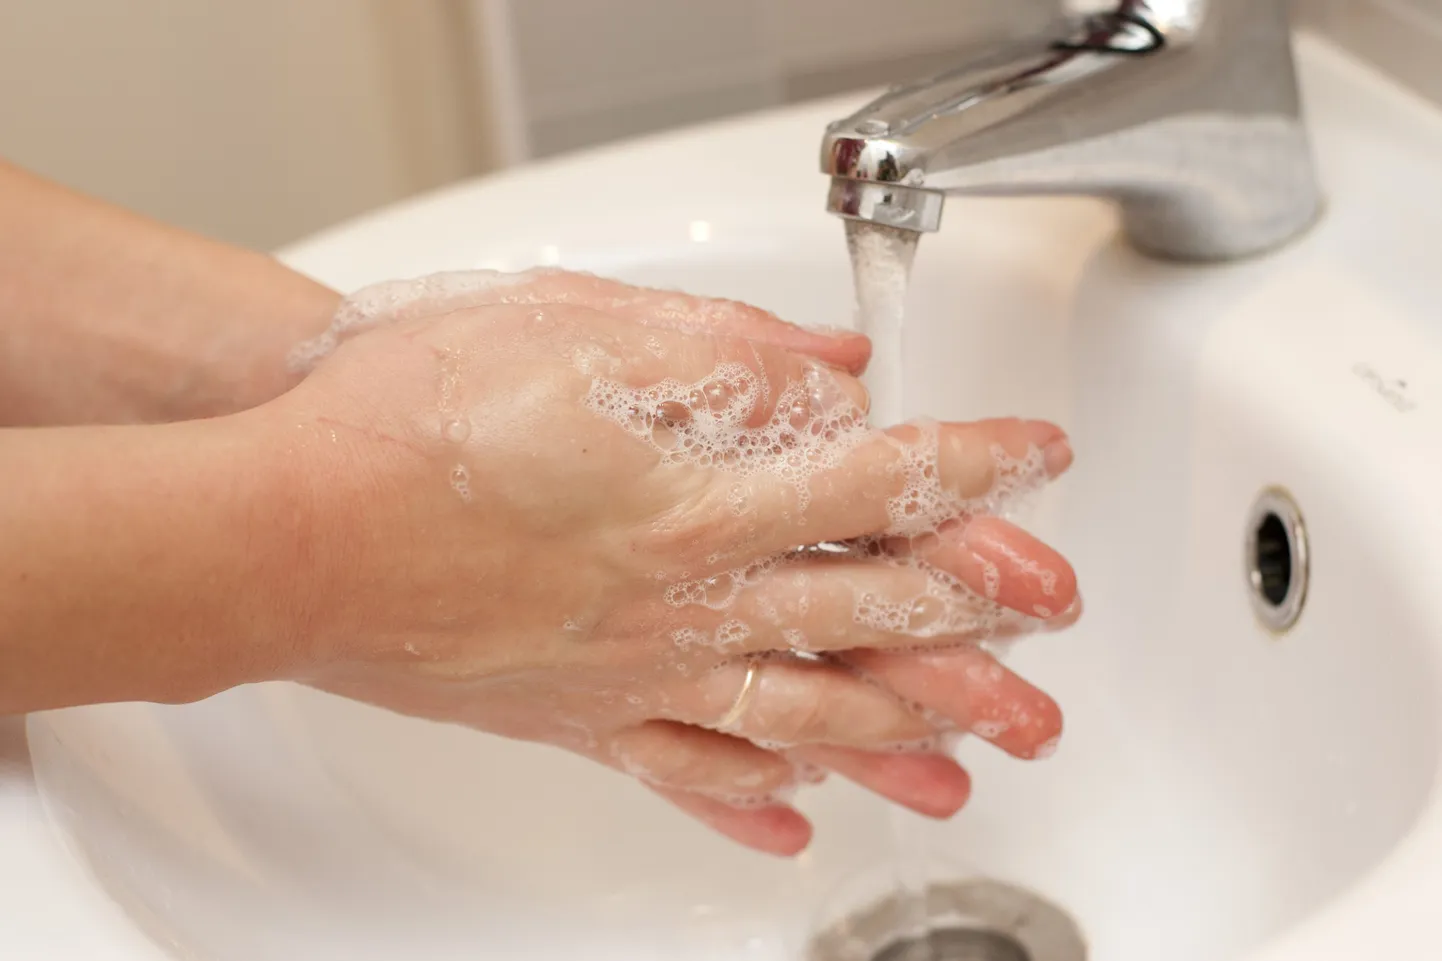 Все жертвы нынешней вспышки желтухи заразились либо от больного, либо от инфецированных им предметов обихода, поэтому мытье рук является отличным средством предохранения от болезни.